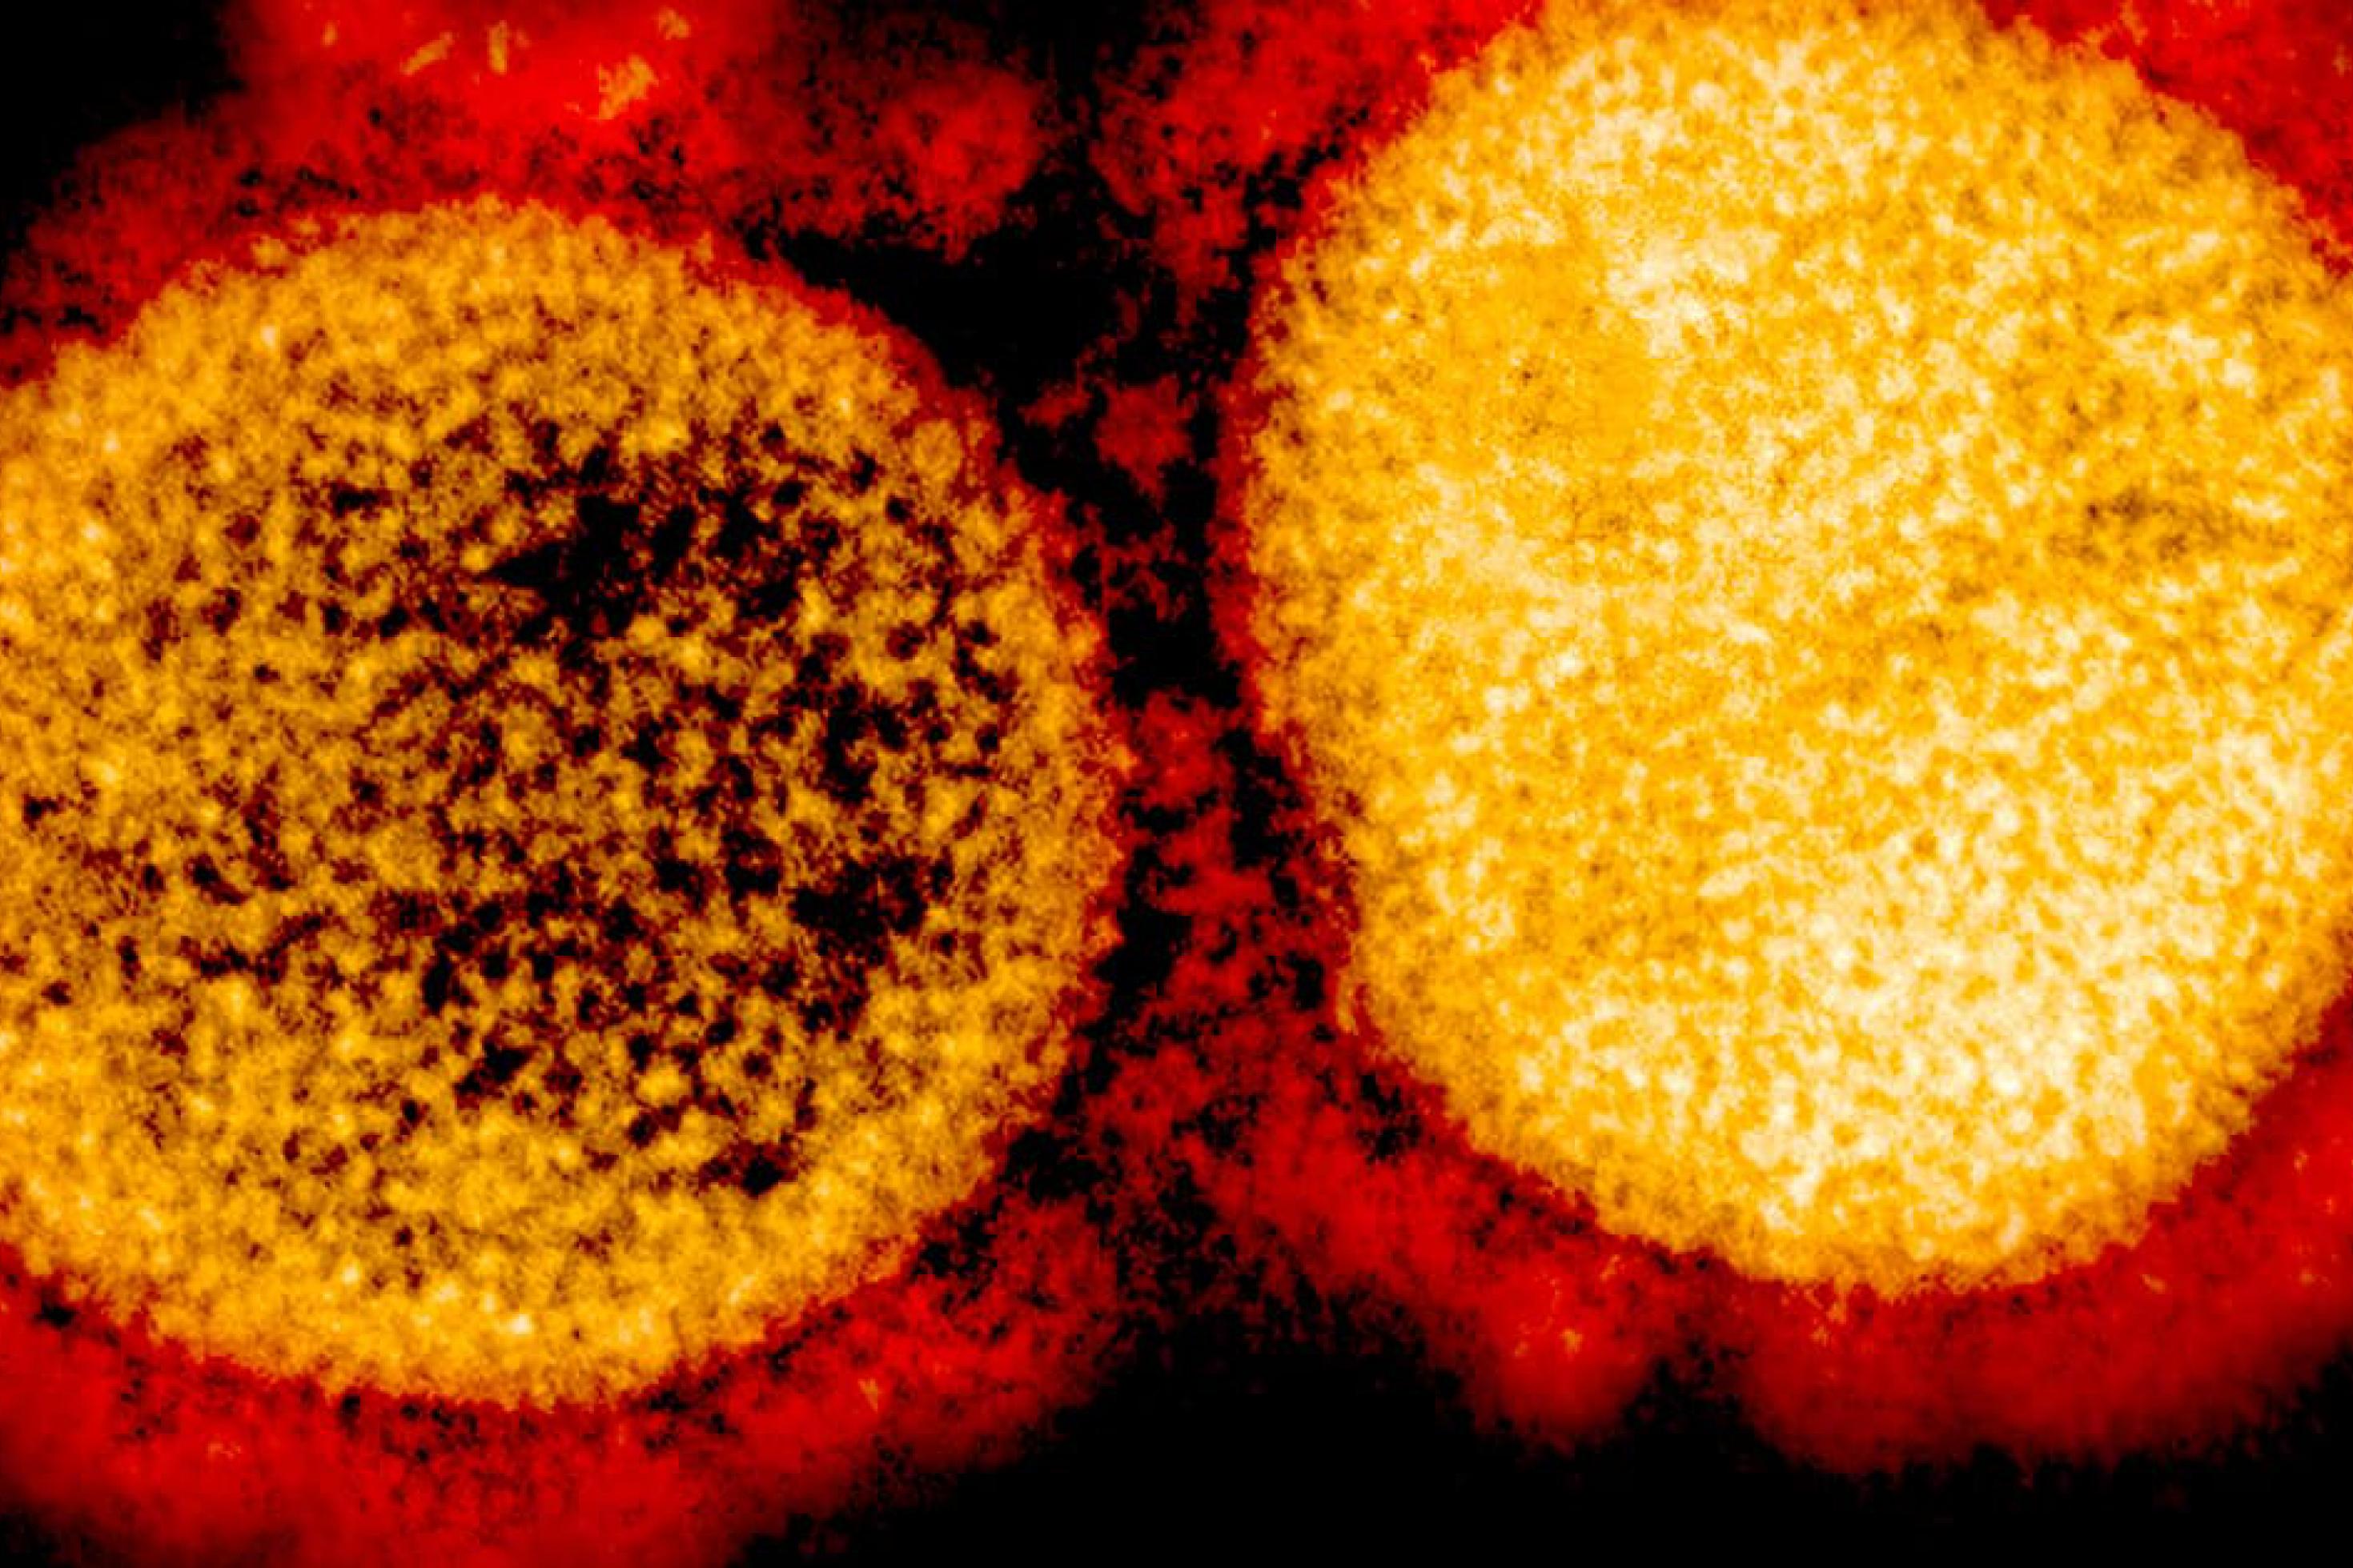 Das Bild zeigt zwei Coronaviren in einer extremen Vergrößerung. Sie sind rundlich und haben dornenartige Fortsätze, die ihnen beim Eindringen in menschliche Zellen helfen.